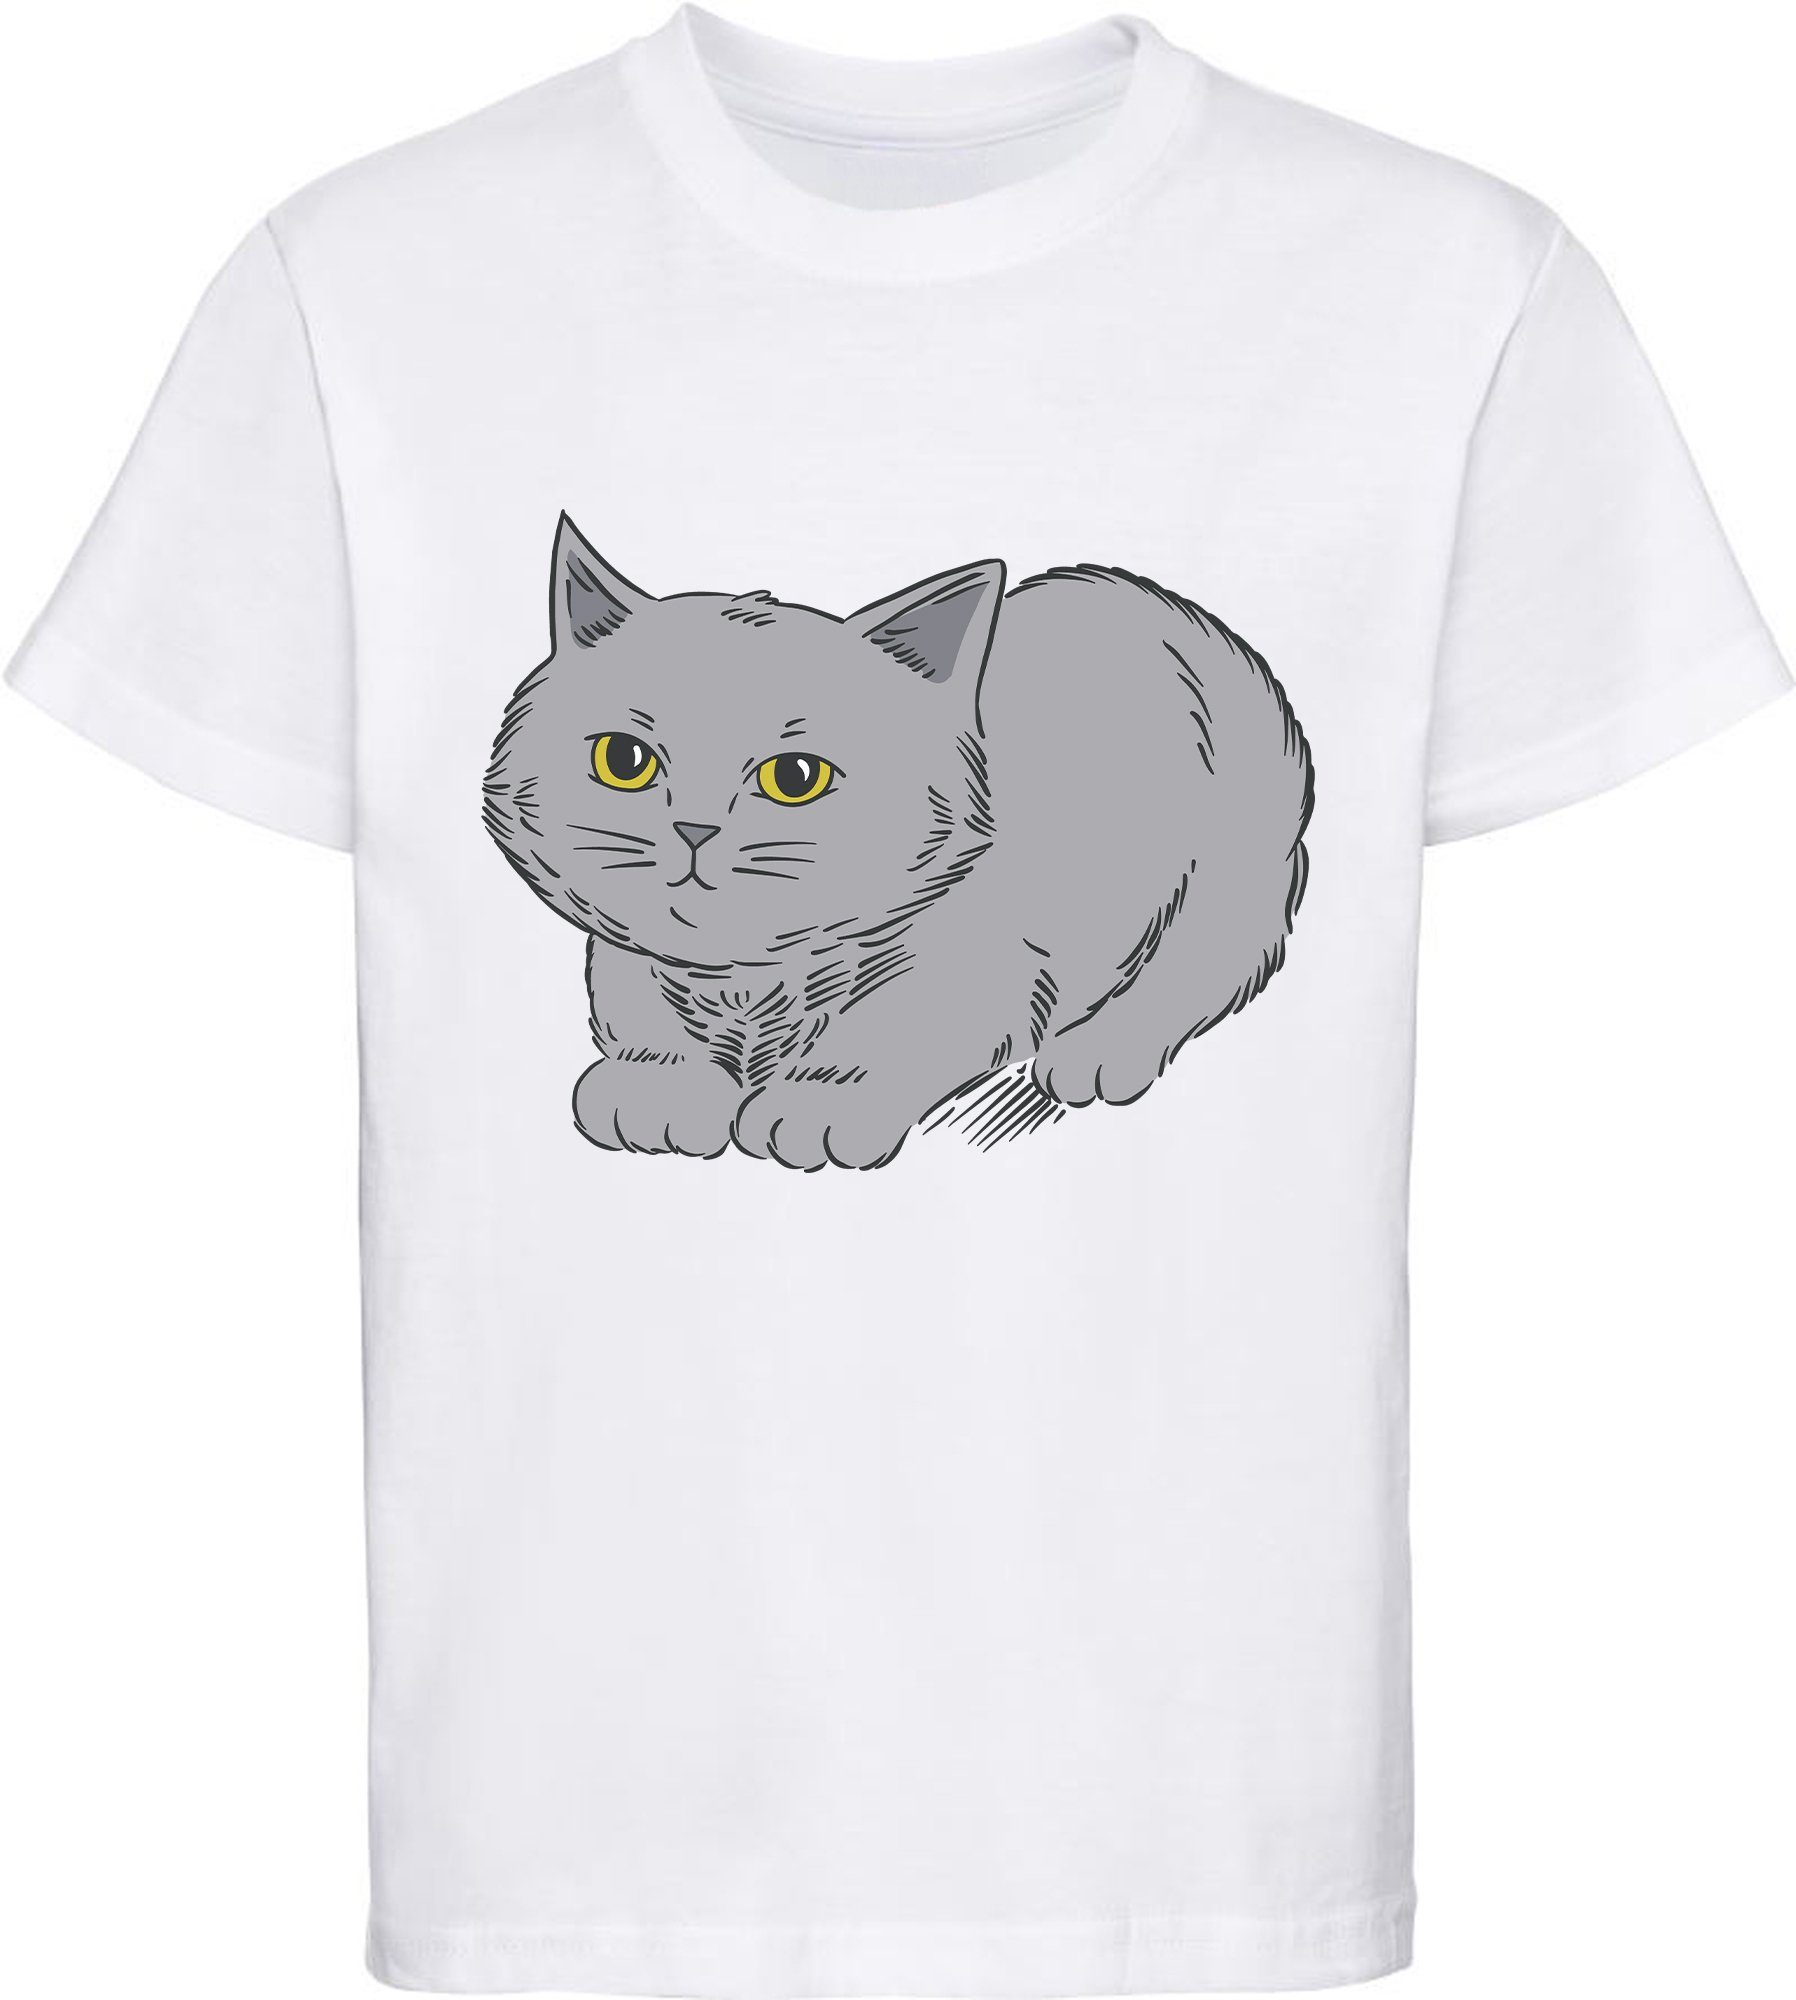 MyDesign24 Print-Shirt bedrucktes Mädchen T-Shirt mit niedlicher grauen Katze Baumwollshirt mit Katze, weiß, schwarz, rot, rosa, i107 weiss